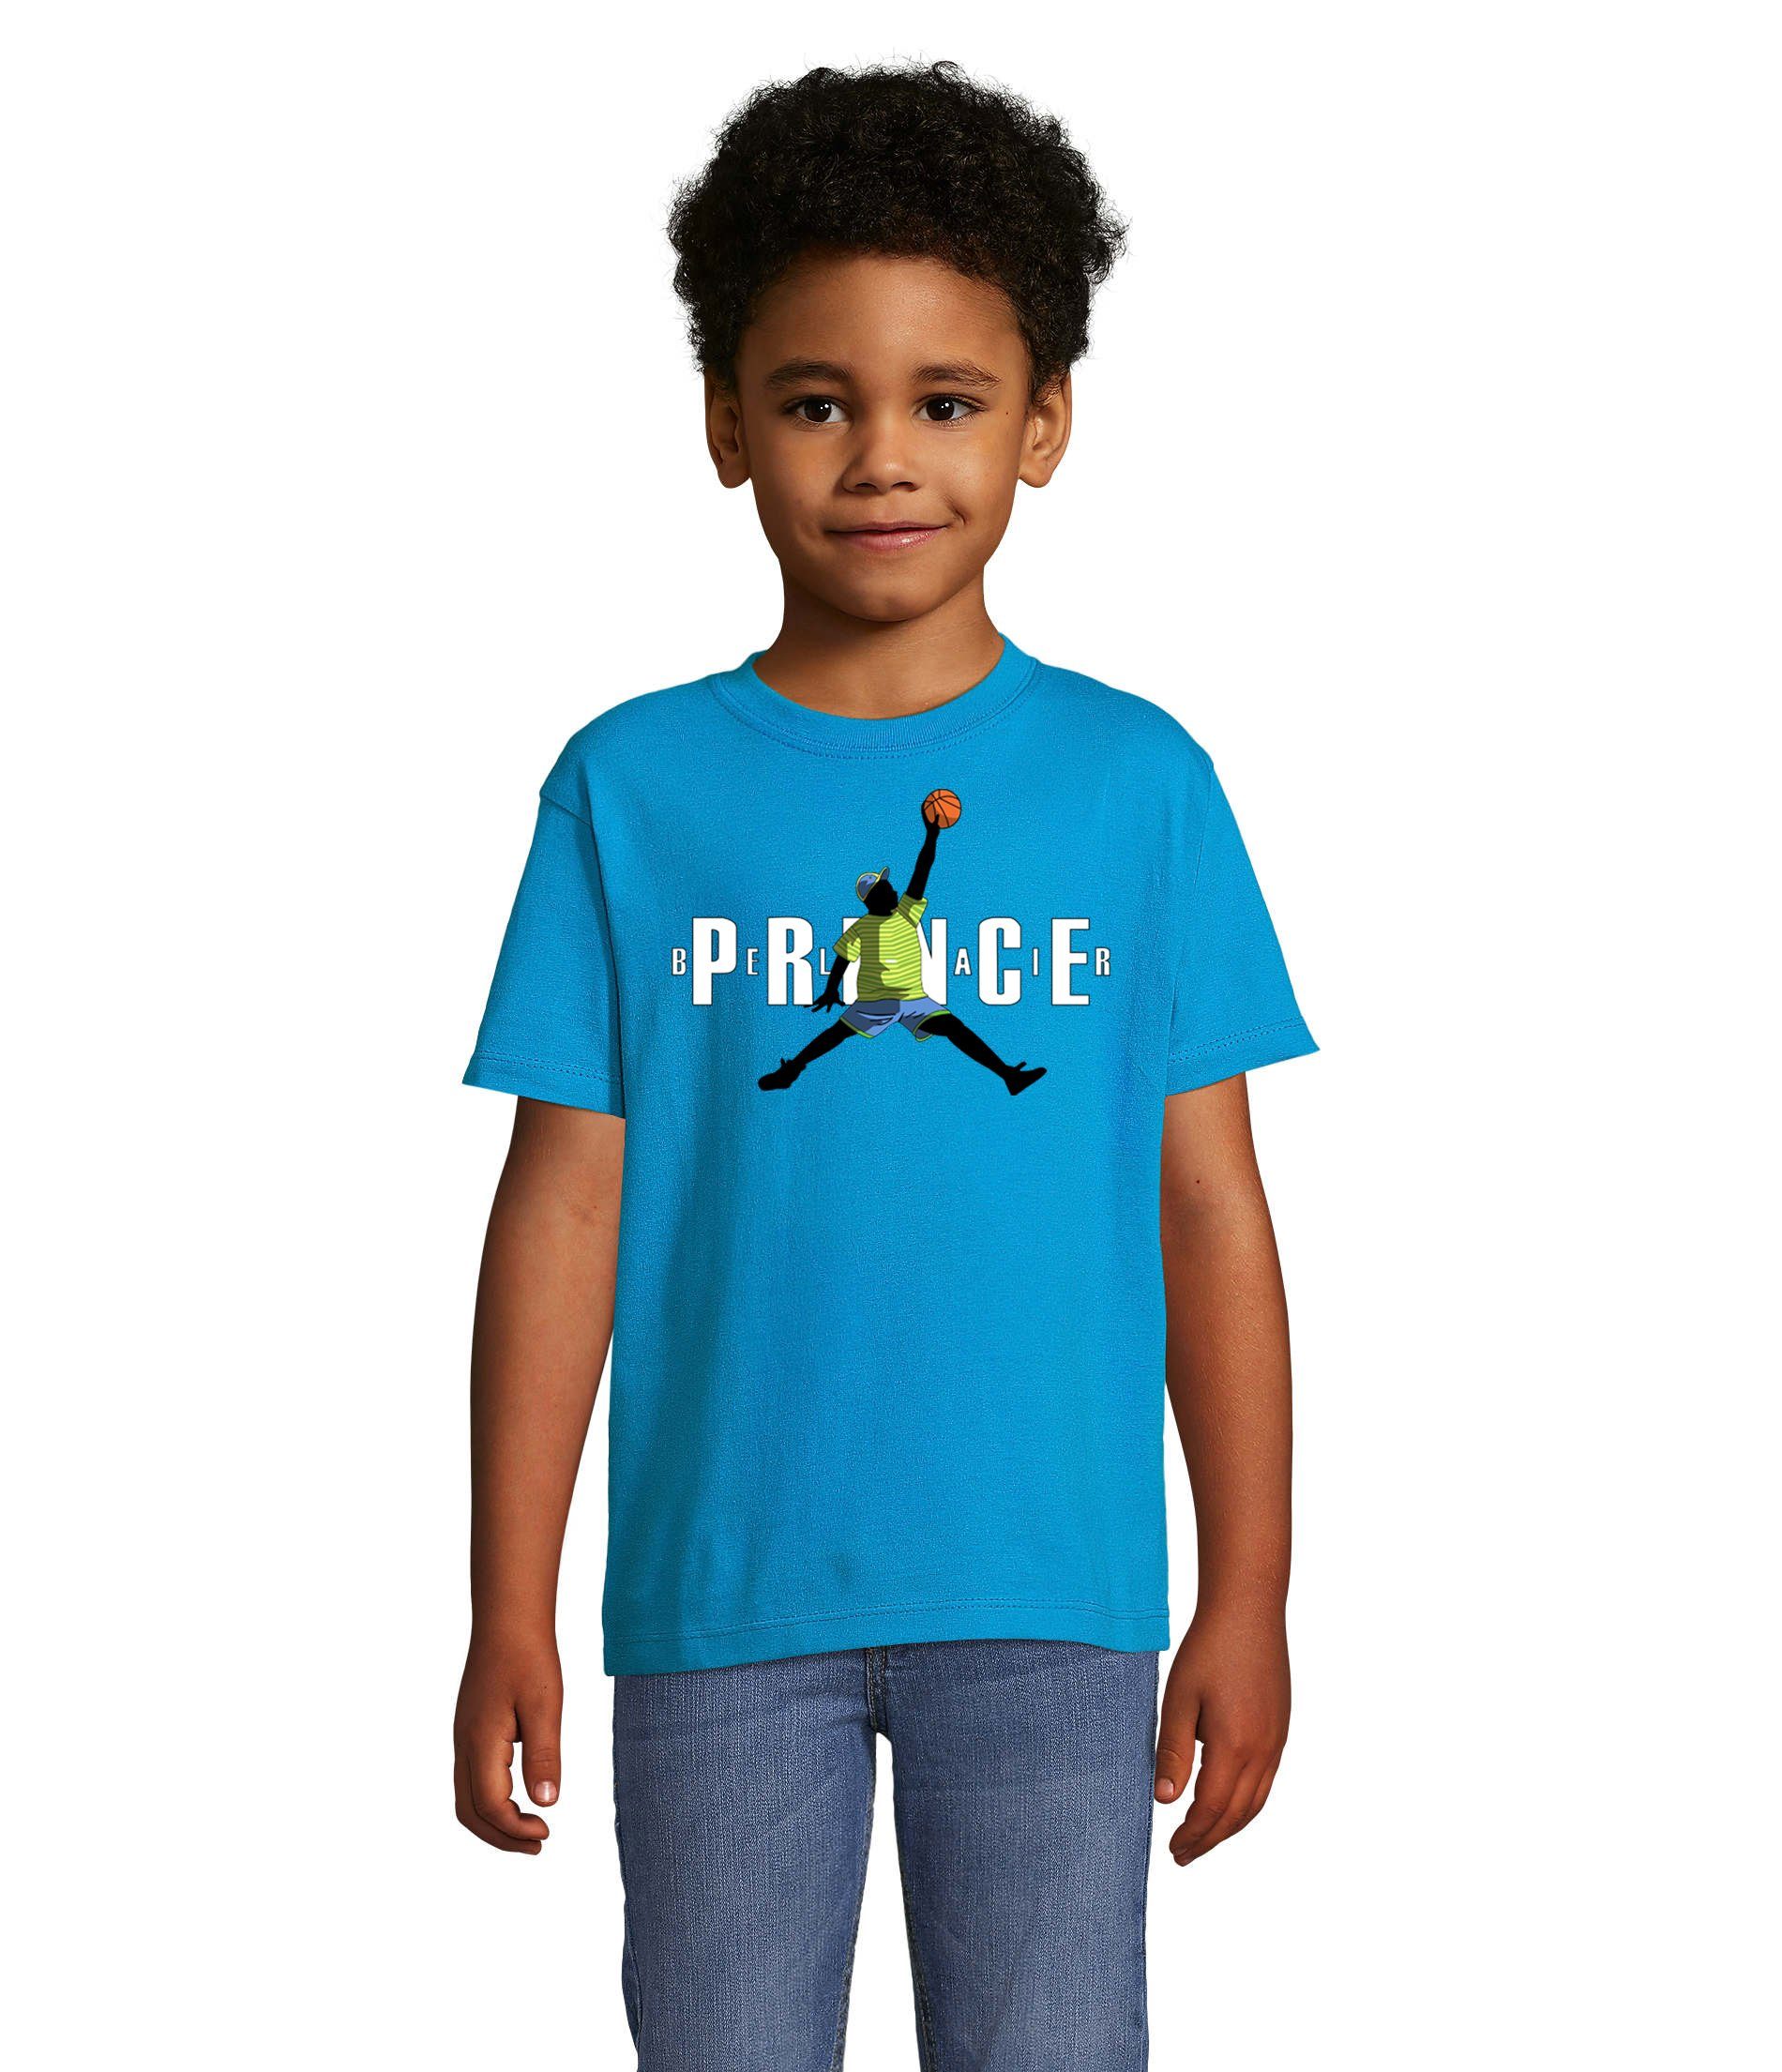 Blondie & Brownie T-Shirt Kinder Jungen & Mädchen Fresh Prince Bel Air Basketball in vielen Farben Blau